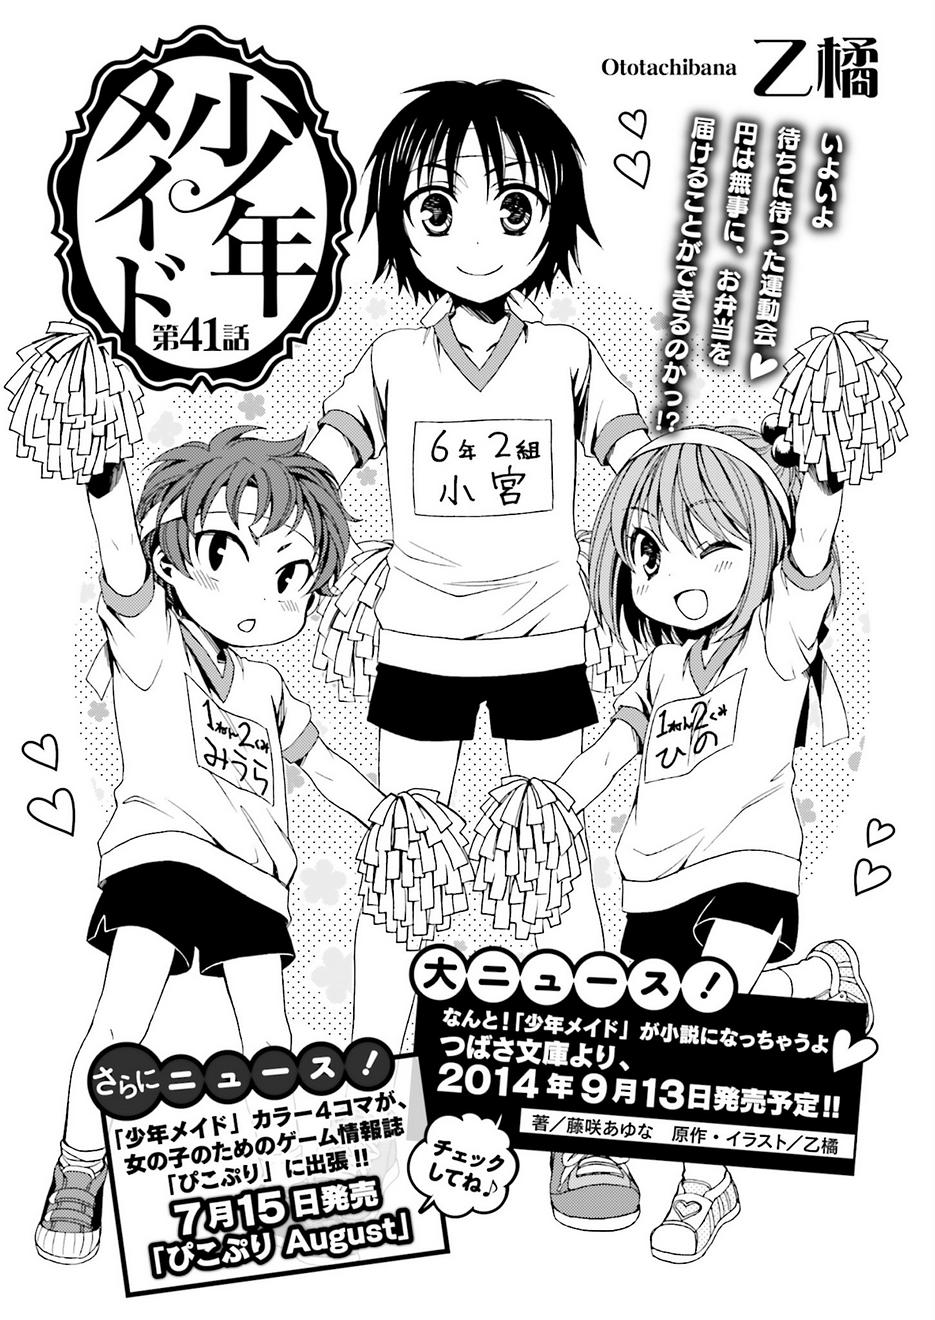 少年メイド 42話 Manga Townまんがタウン まんがまとめ 無料コミック漫画 ネタバレ